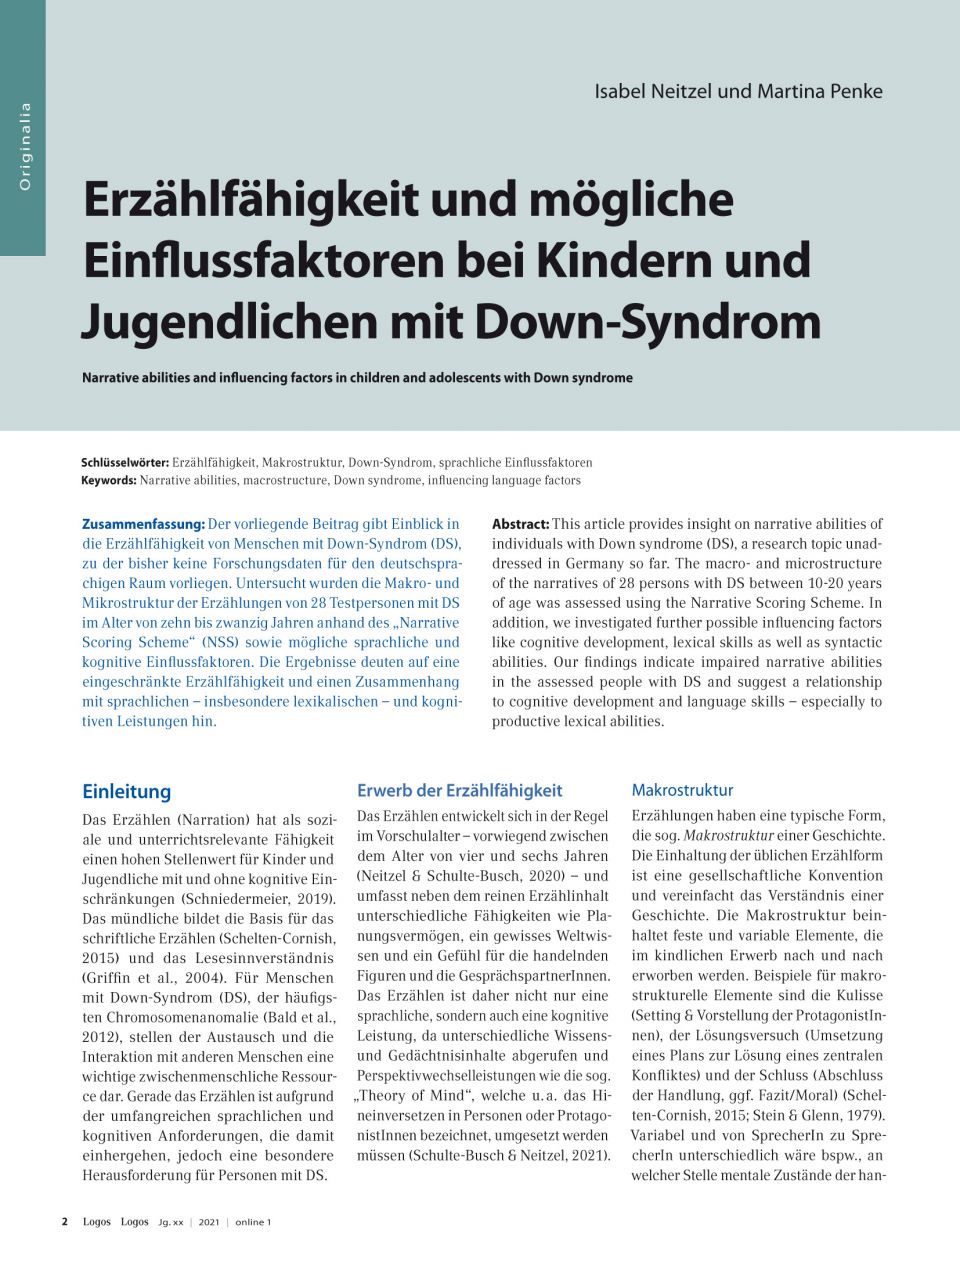 Erzählfähigkeit und mögliche Einflussfaktoren bei Kindern und Jugendlichen mit Down-Syndrom